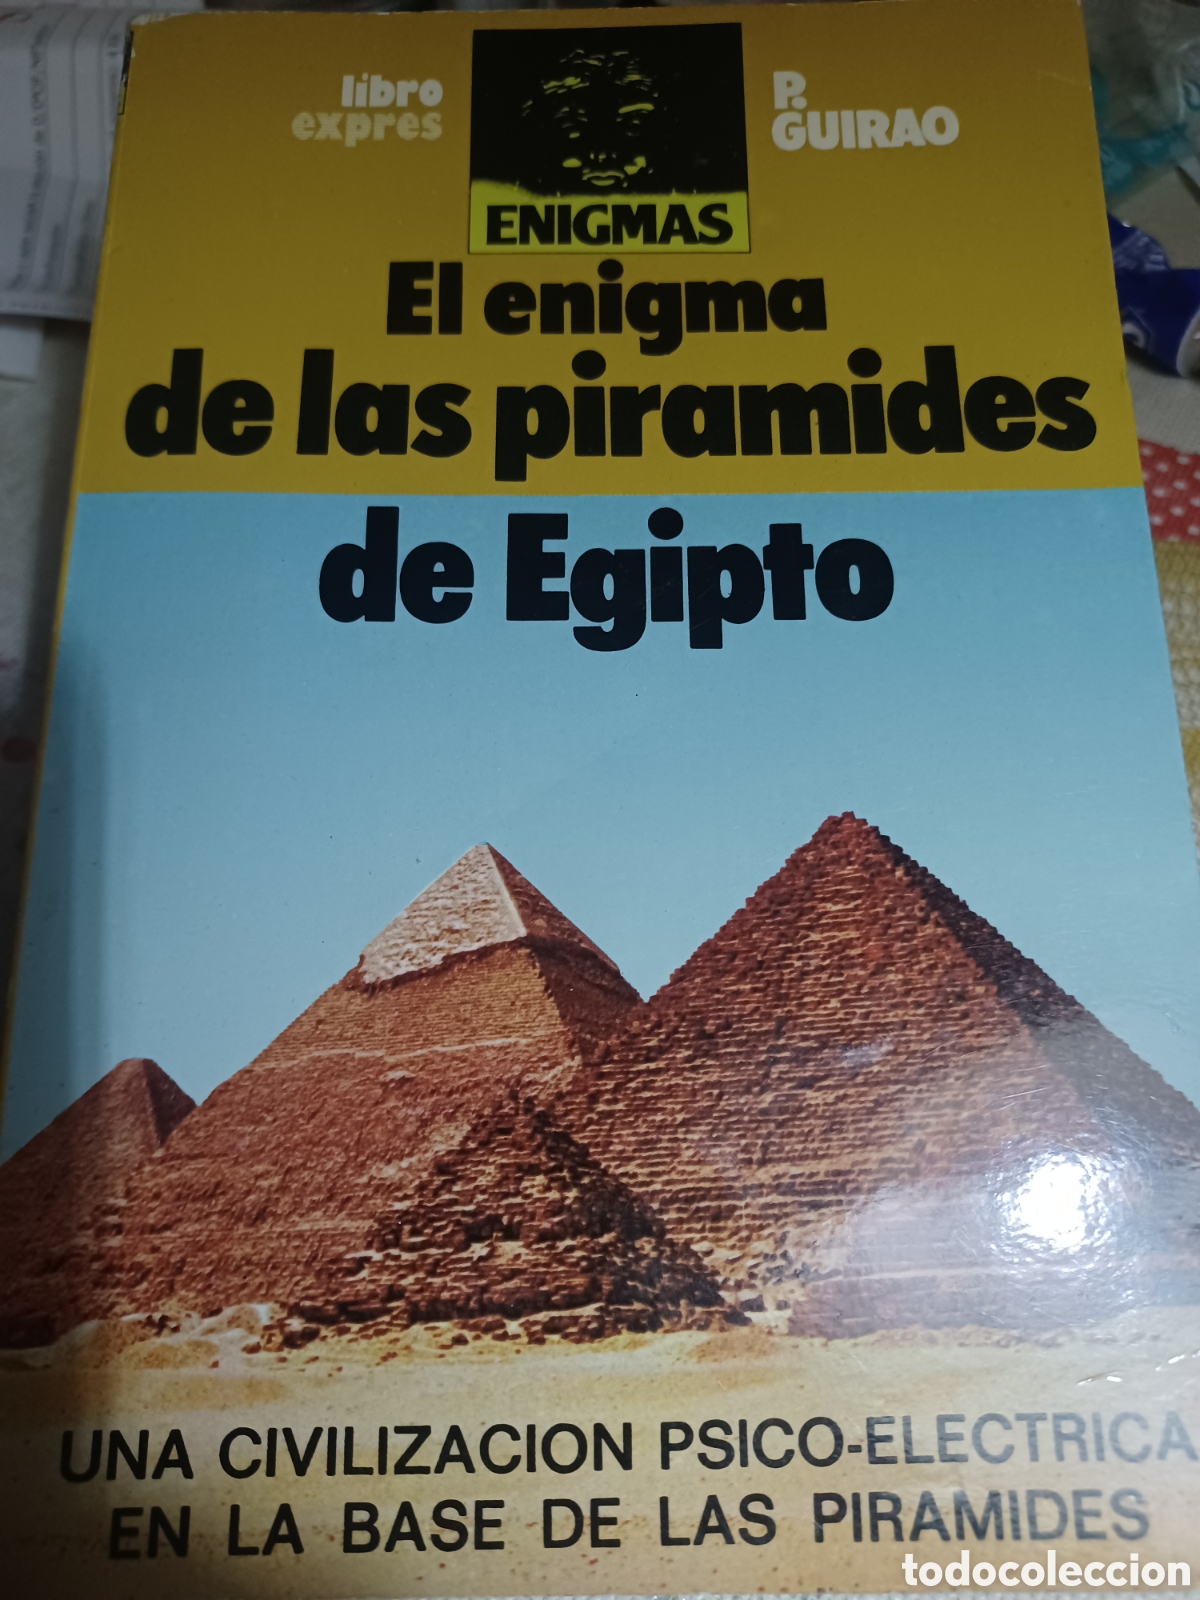 Restricción Superior Vendedor baribook c97 de las pirámides de egipto p guira - Compra venta en  todocoleccion